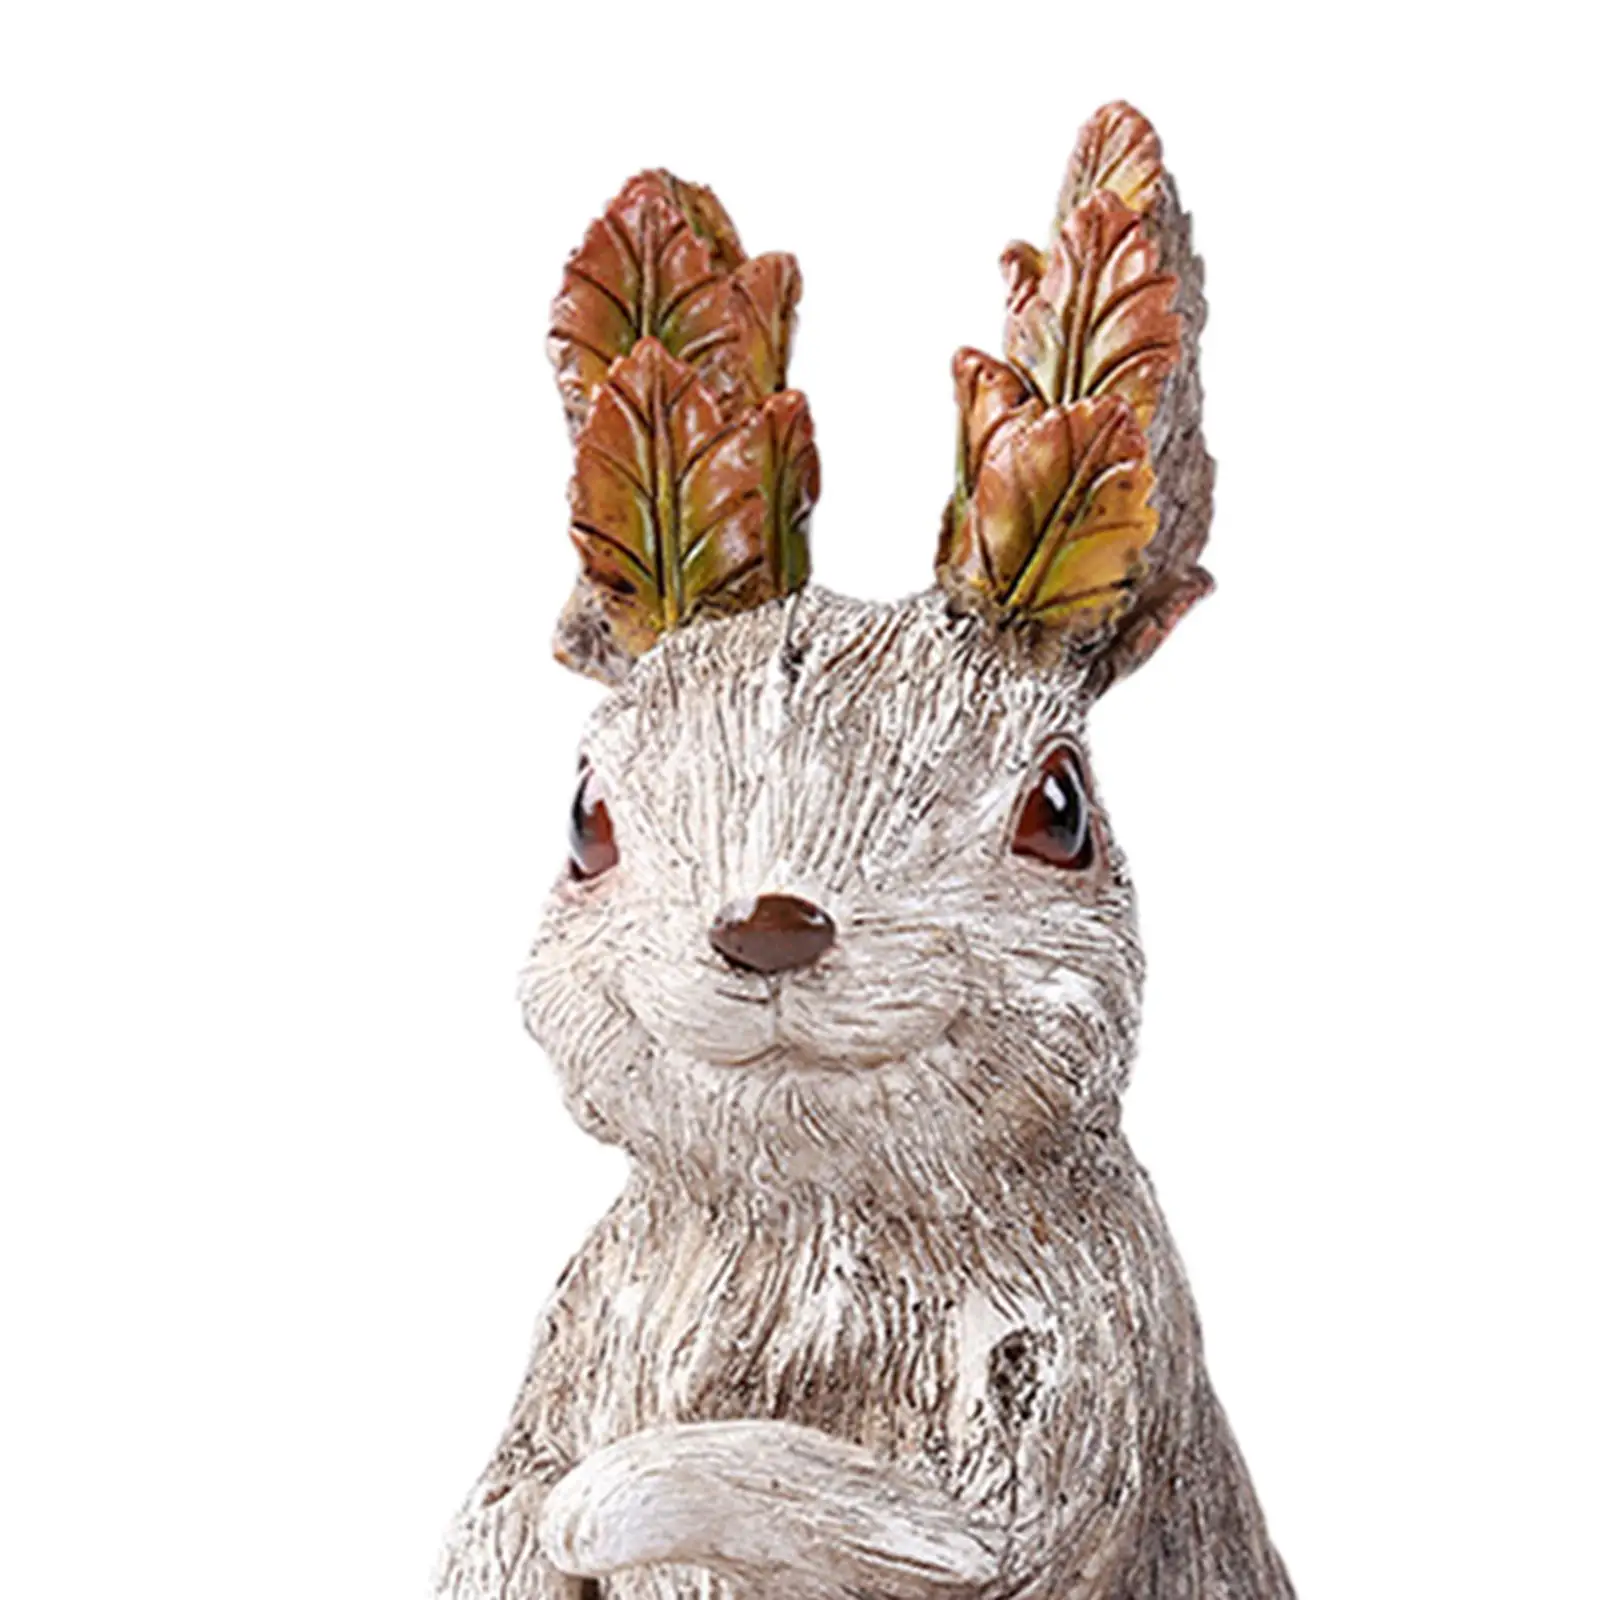 Resin Rabbit Figurine animal Sculptures Waterproof for Party Outdoor Garden Yard Ornaments